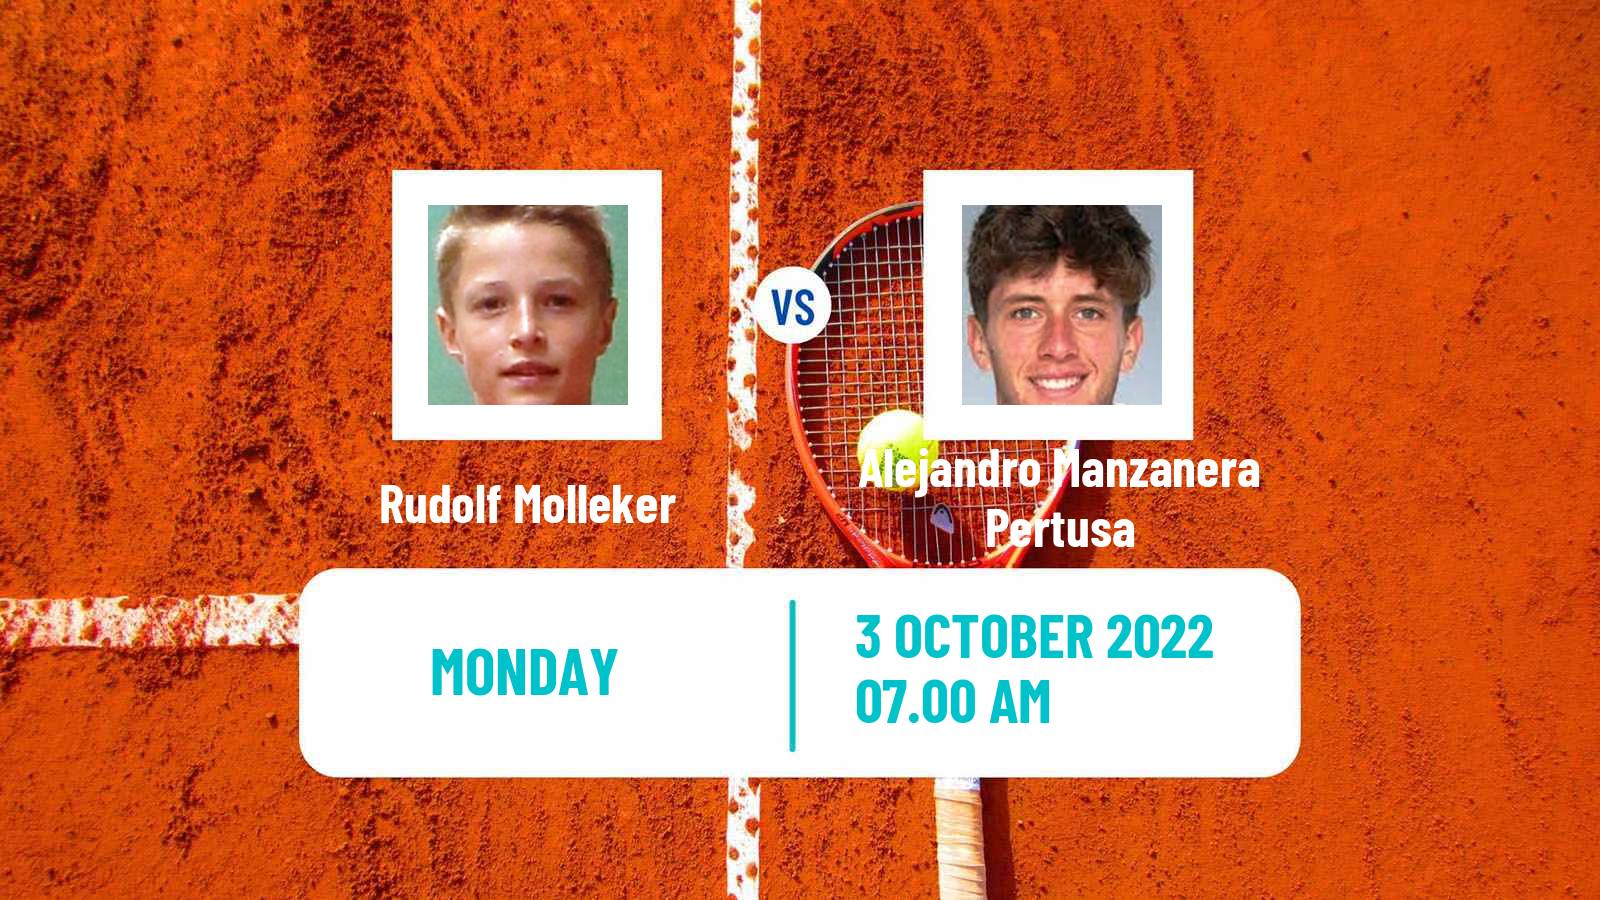 Tennis ATP Challenger Rudolf Molleker - Alejandro Manzanera Pertusa